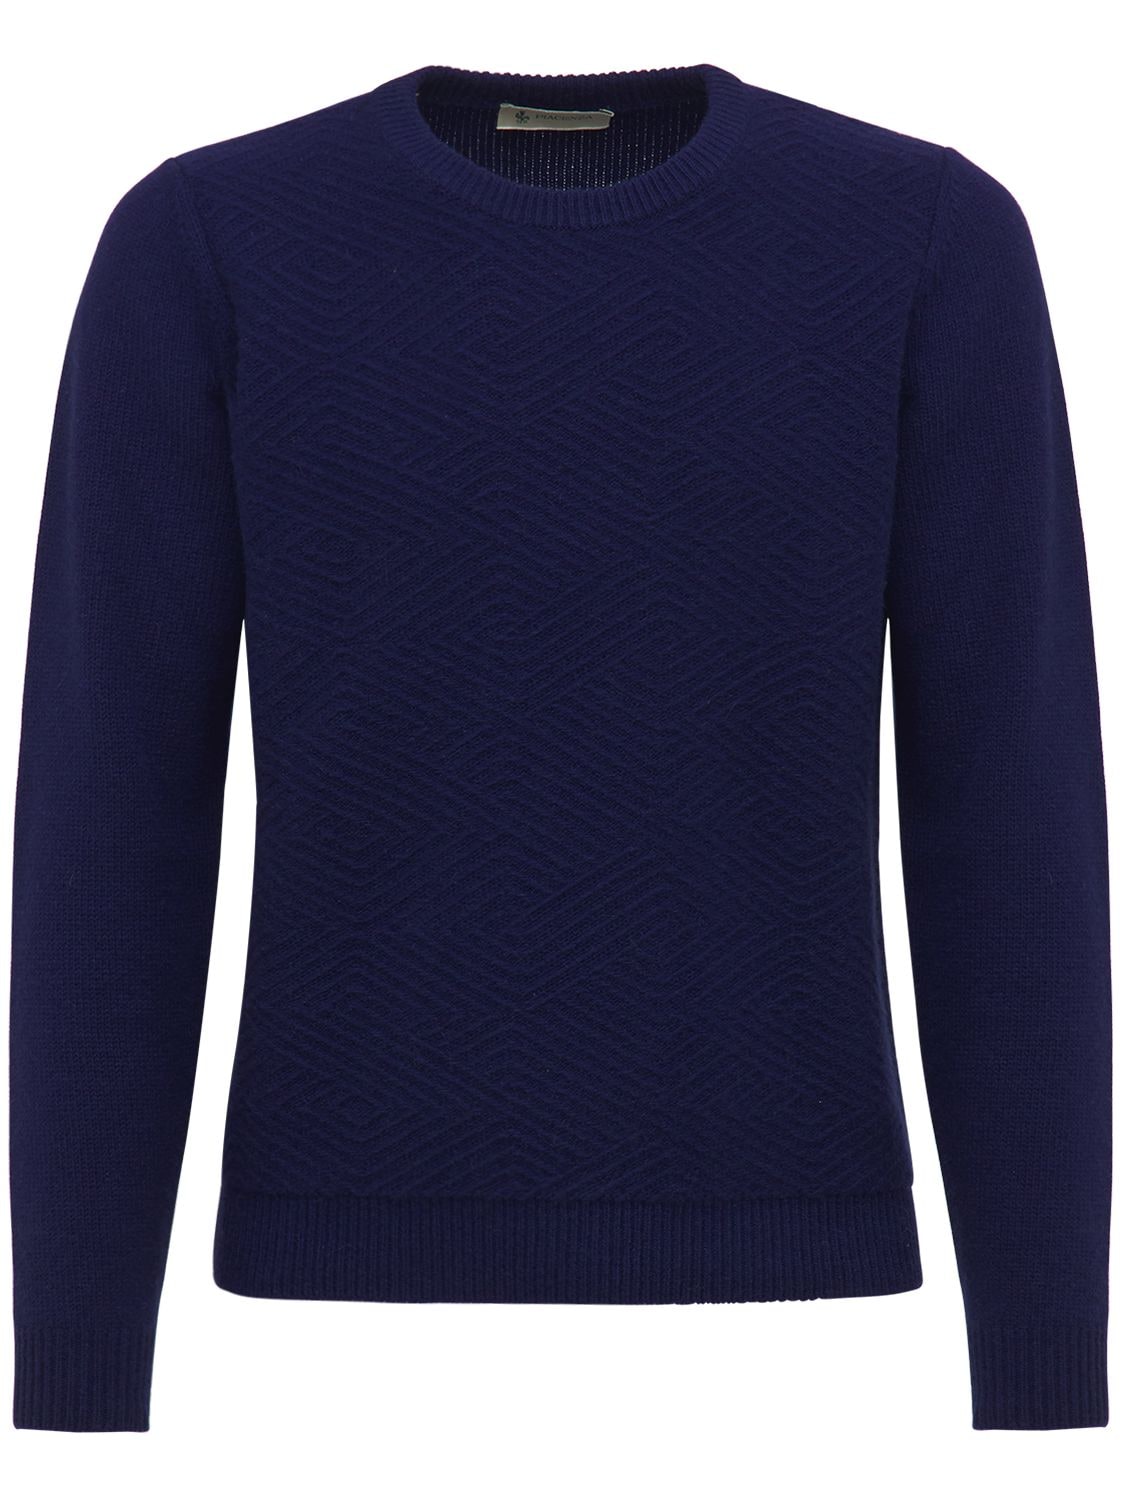 Piacenza Cashmere - Jacquard wool & cashmere knit sweater - | Luisaviaroma